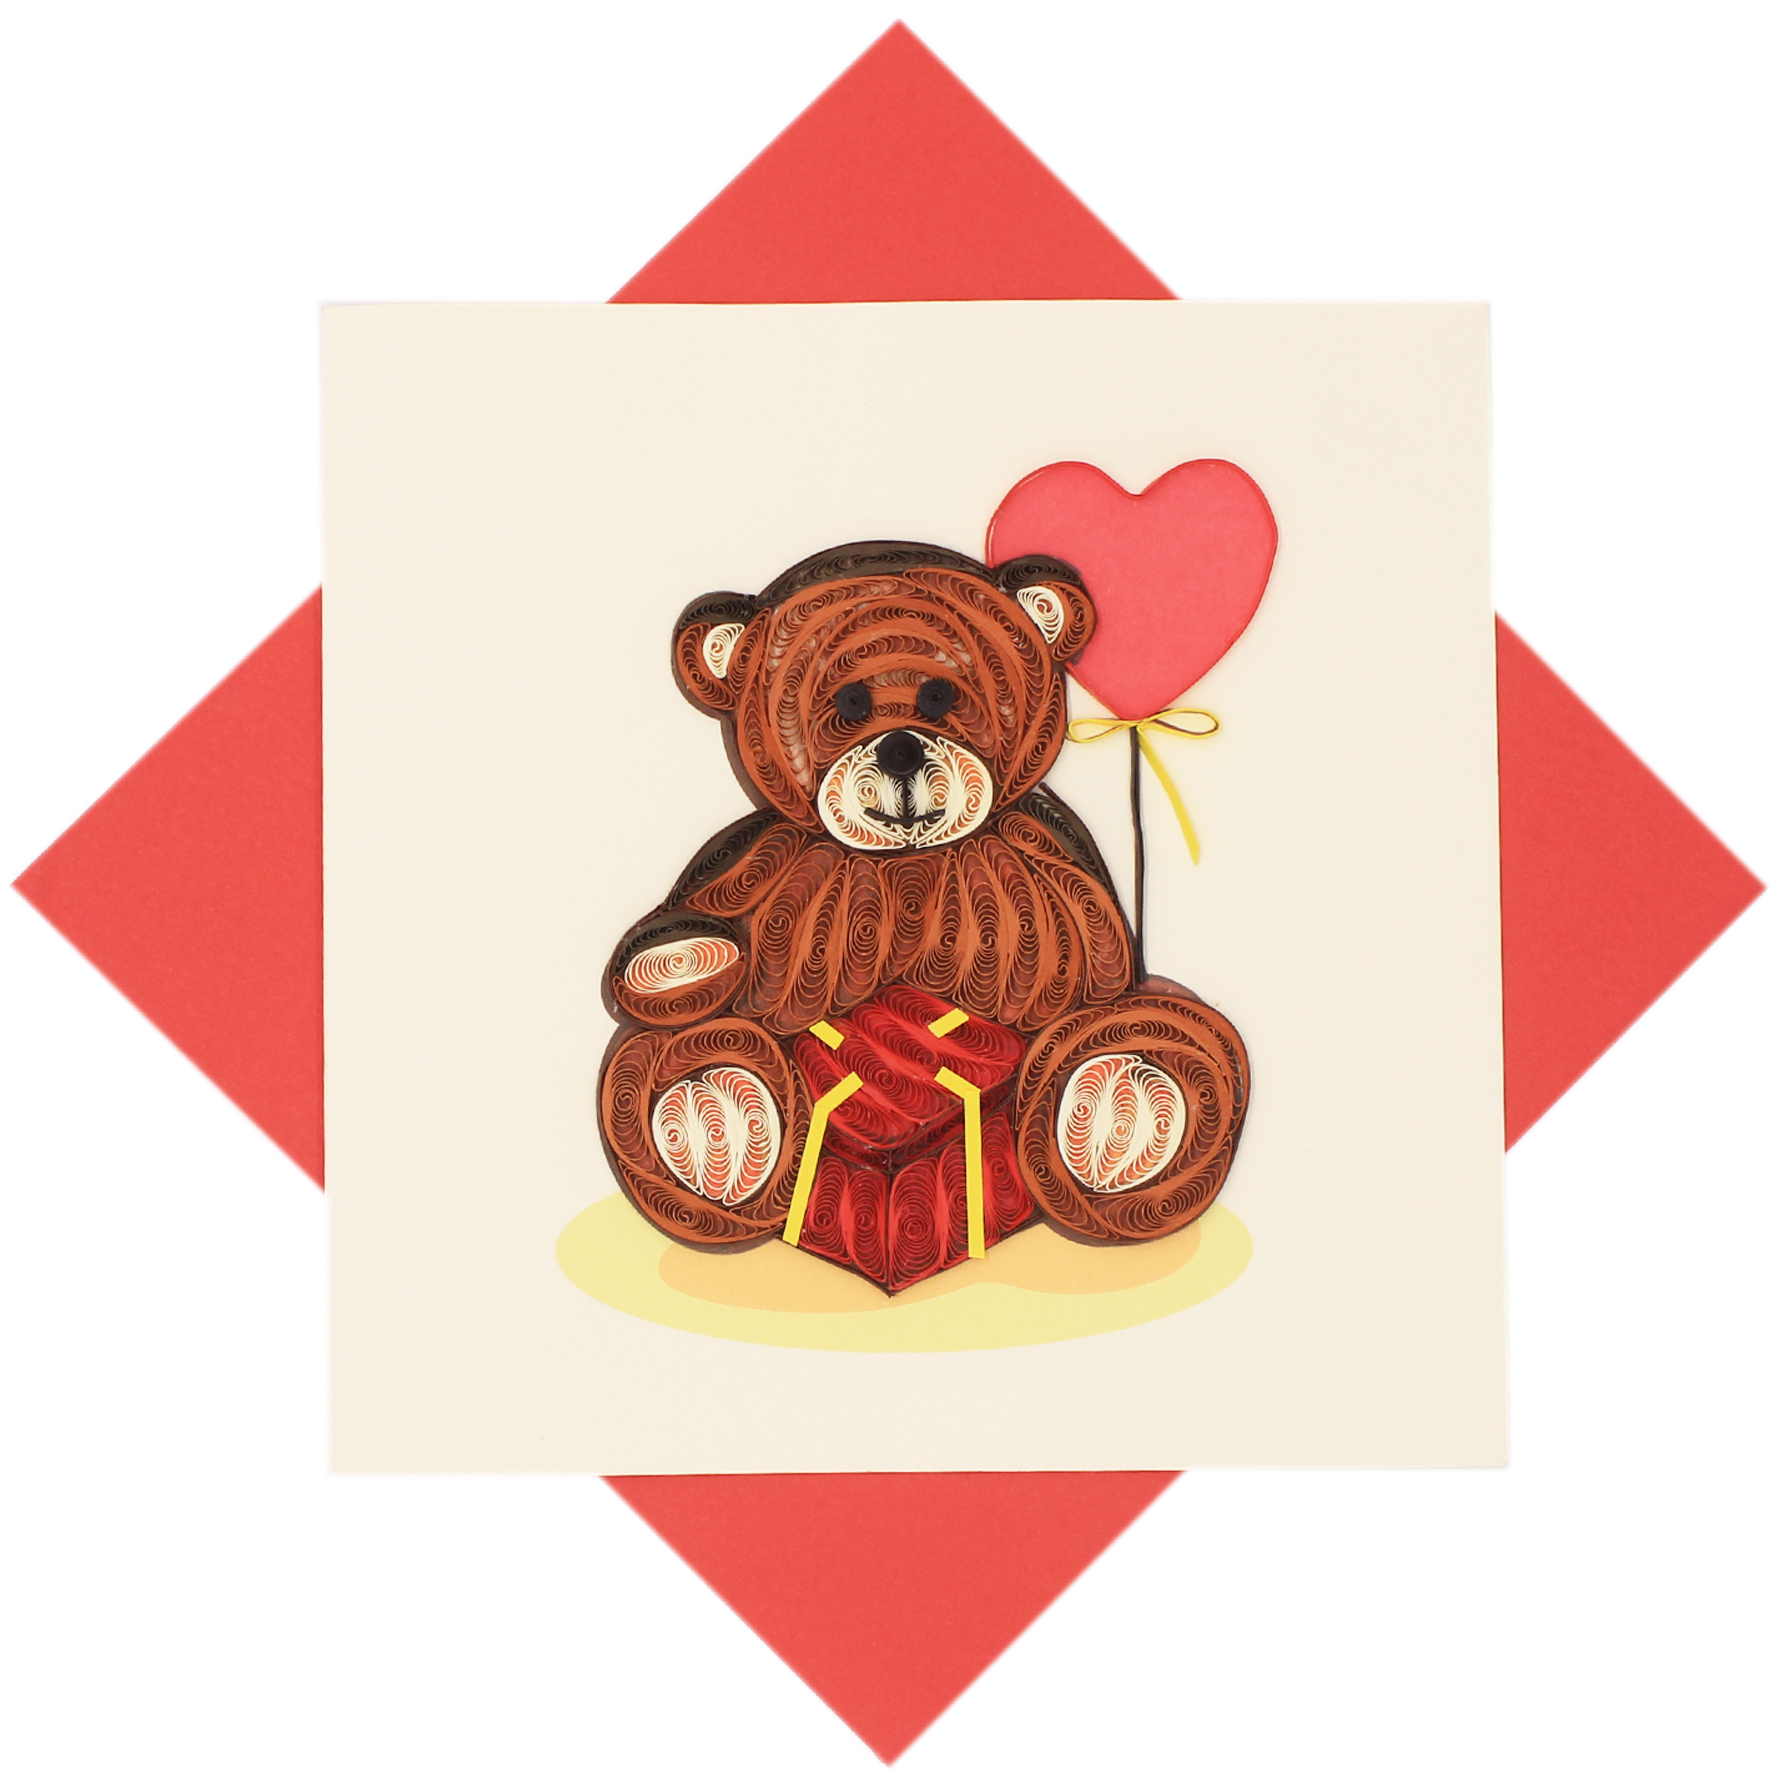 Thiệp Handmade - Thiệp Gấu tình yêu nghệ thuật giấy xoắn (Quilling Card) - Tặng Kèm Khung Giấy Để Bàn - Thiệp chúc mừng sinh nhật, kỷ niệm, tình yêu, cảm ơn...